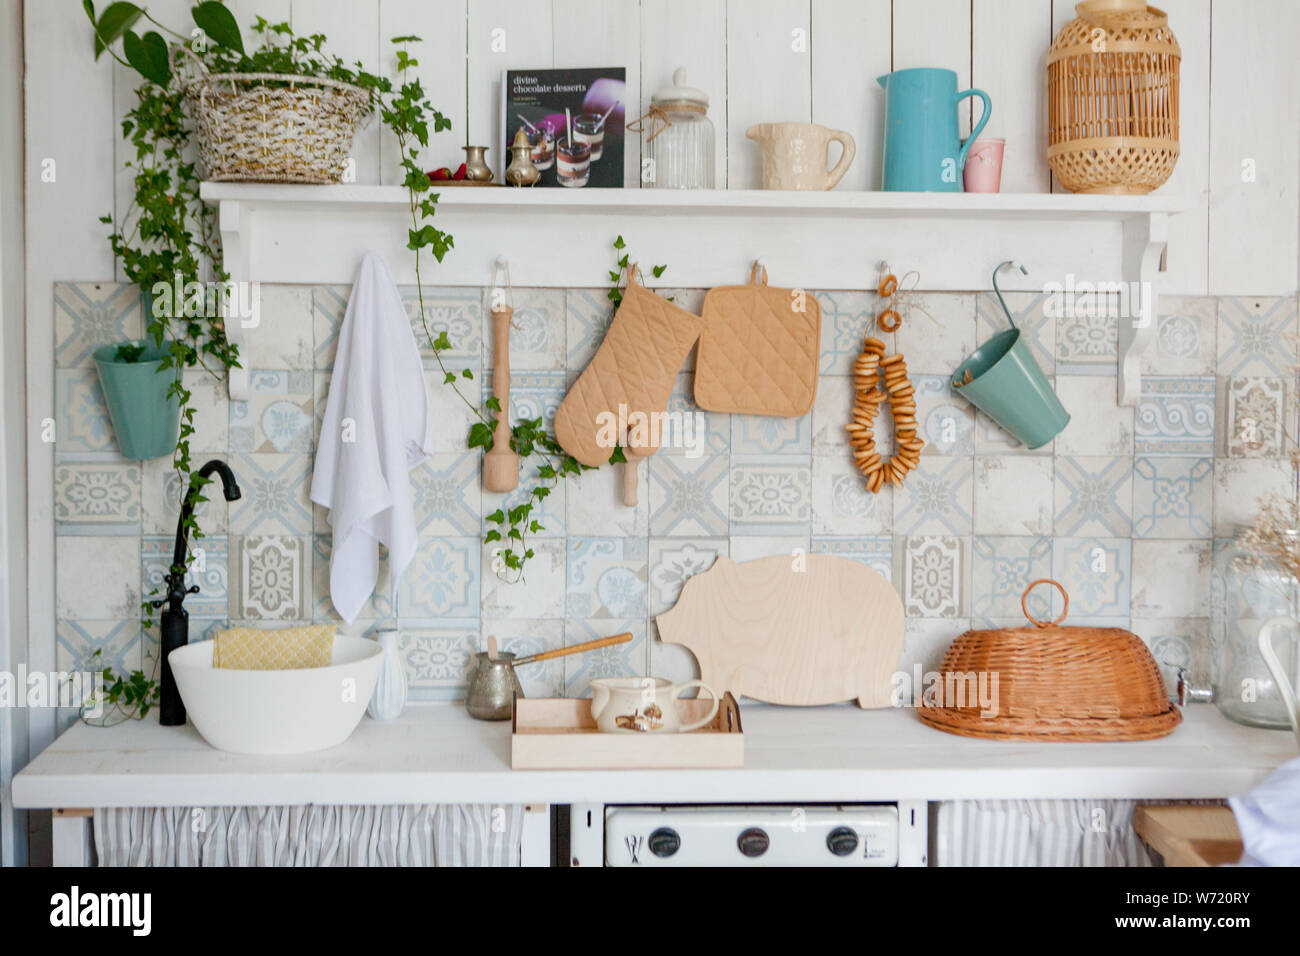 Handtuch für die Küche und Handschuh auf der Arbeit oben in der modernen  Küche, Küche Zubehör hängen in der Regenrinne auf der weißen Wand  Stockfotografie - Alamy